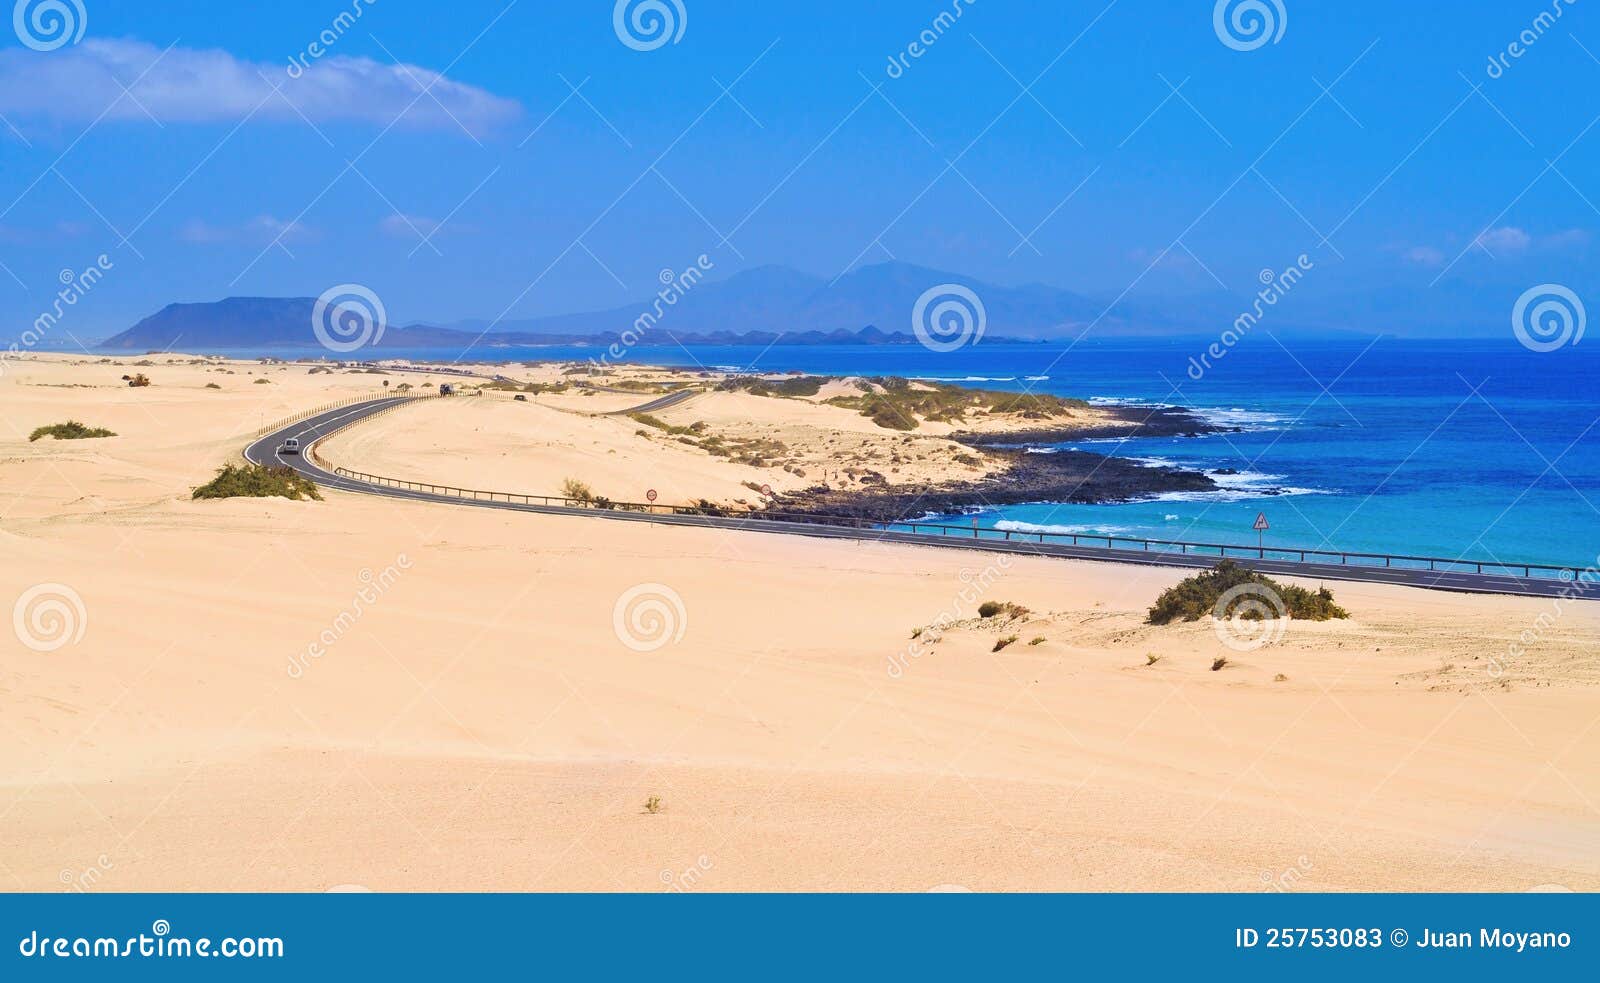 dunes of corralejo in fuerteventura, spain